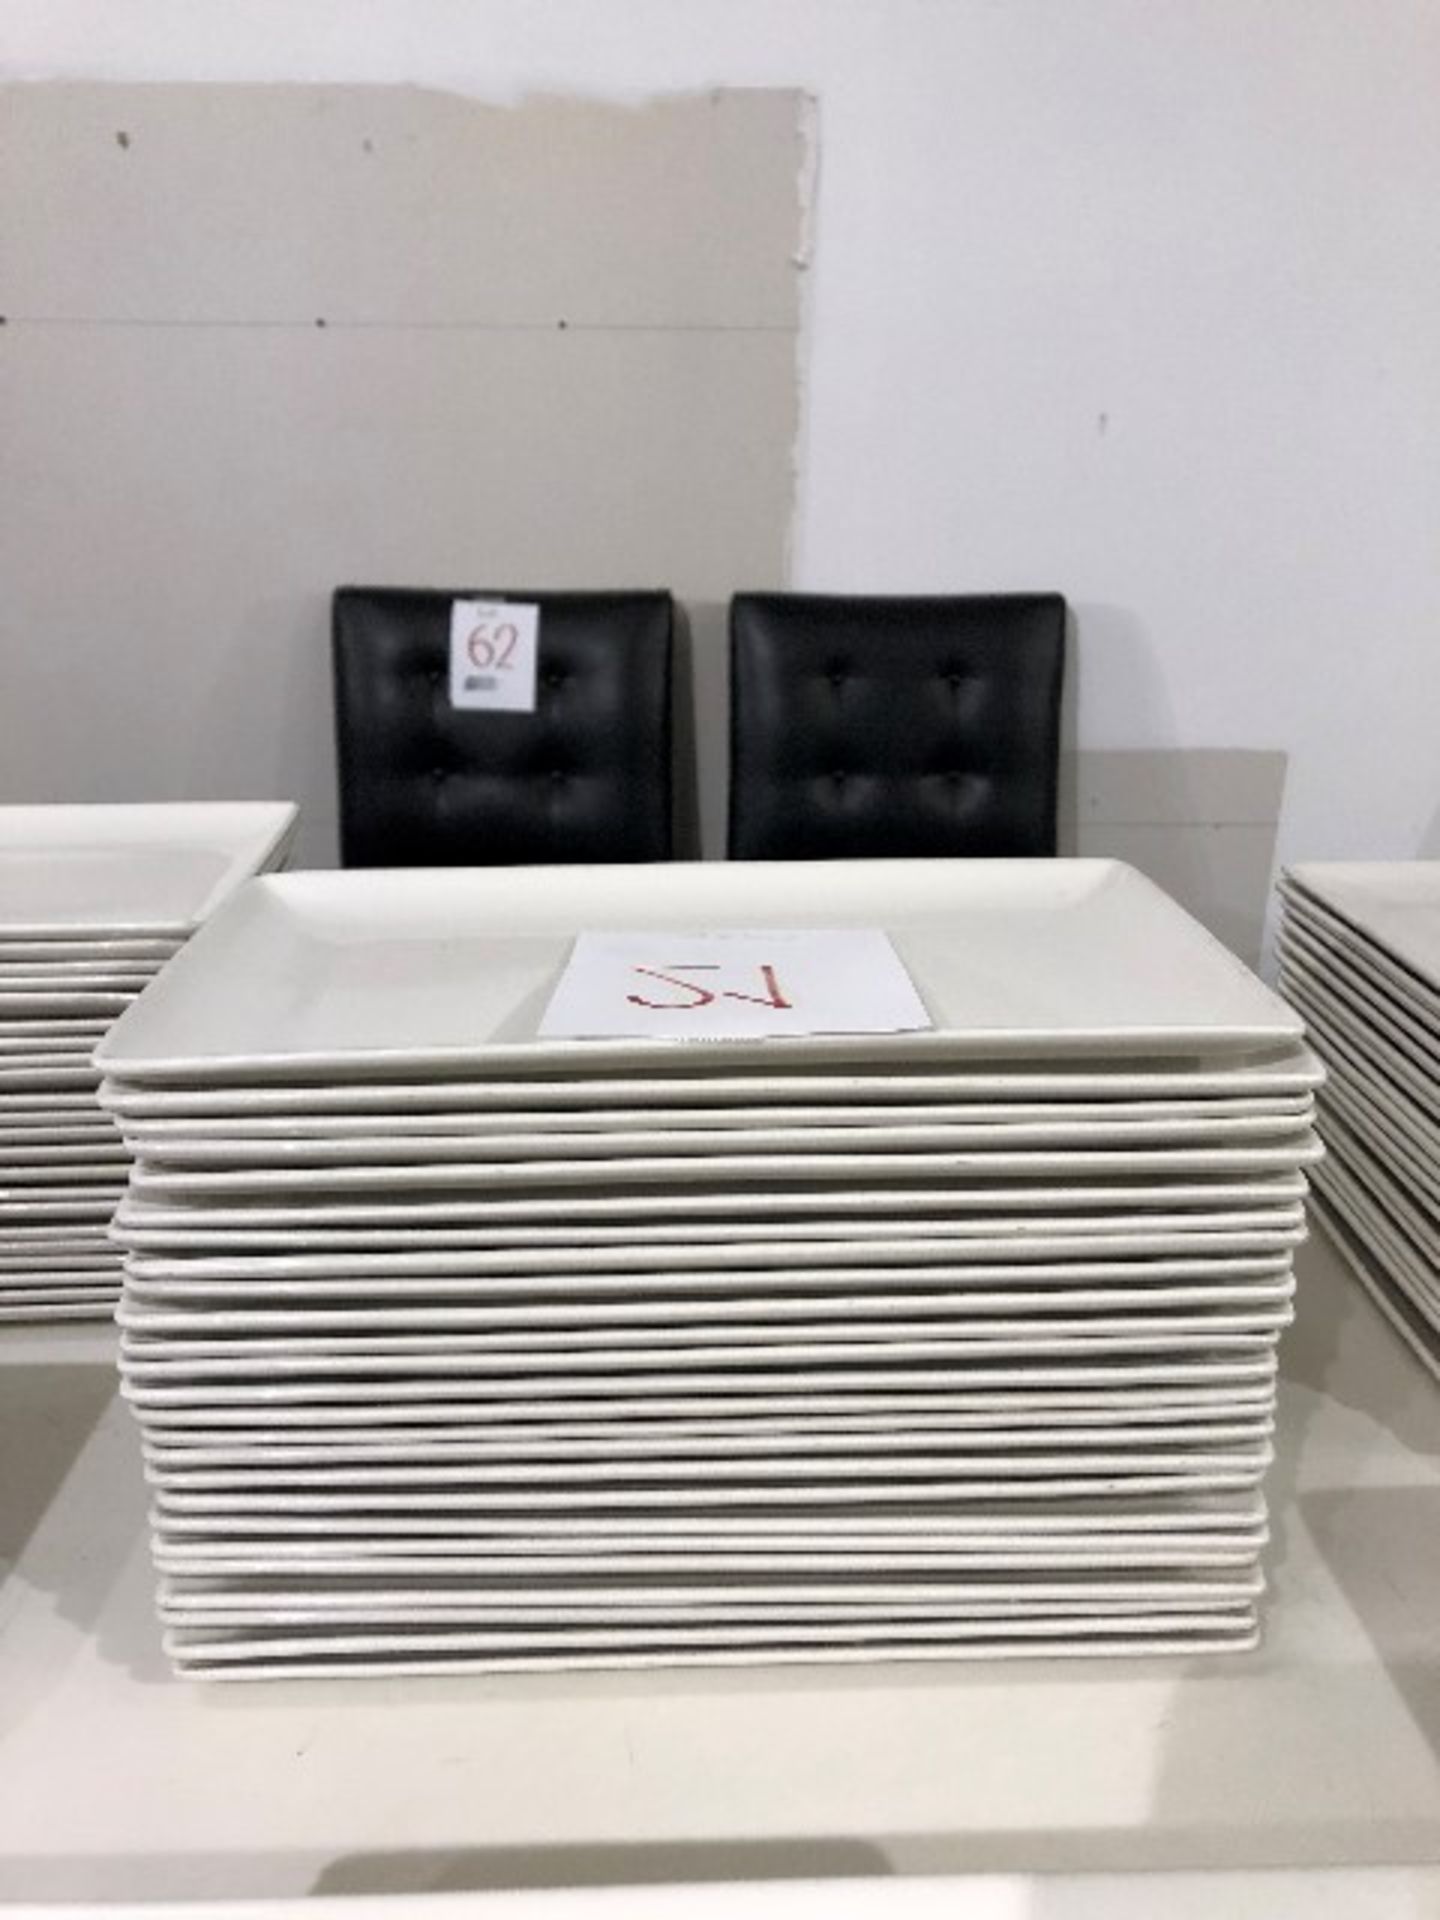 Rectangular plates, 13”x7.5”, 23 pcs (Lot)